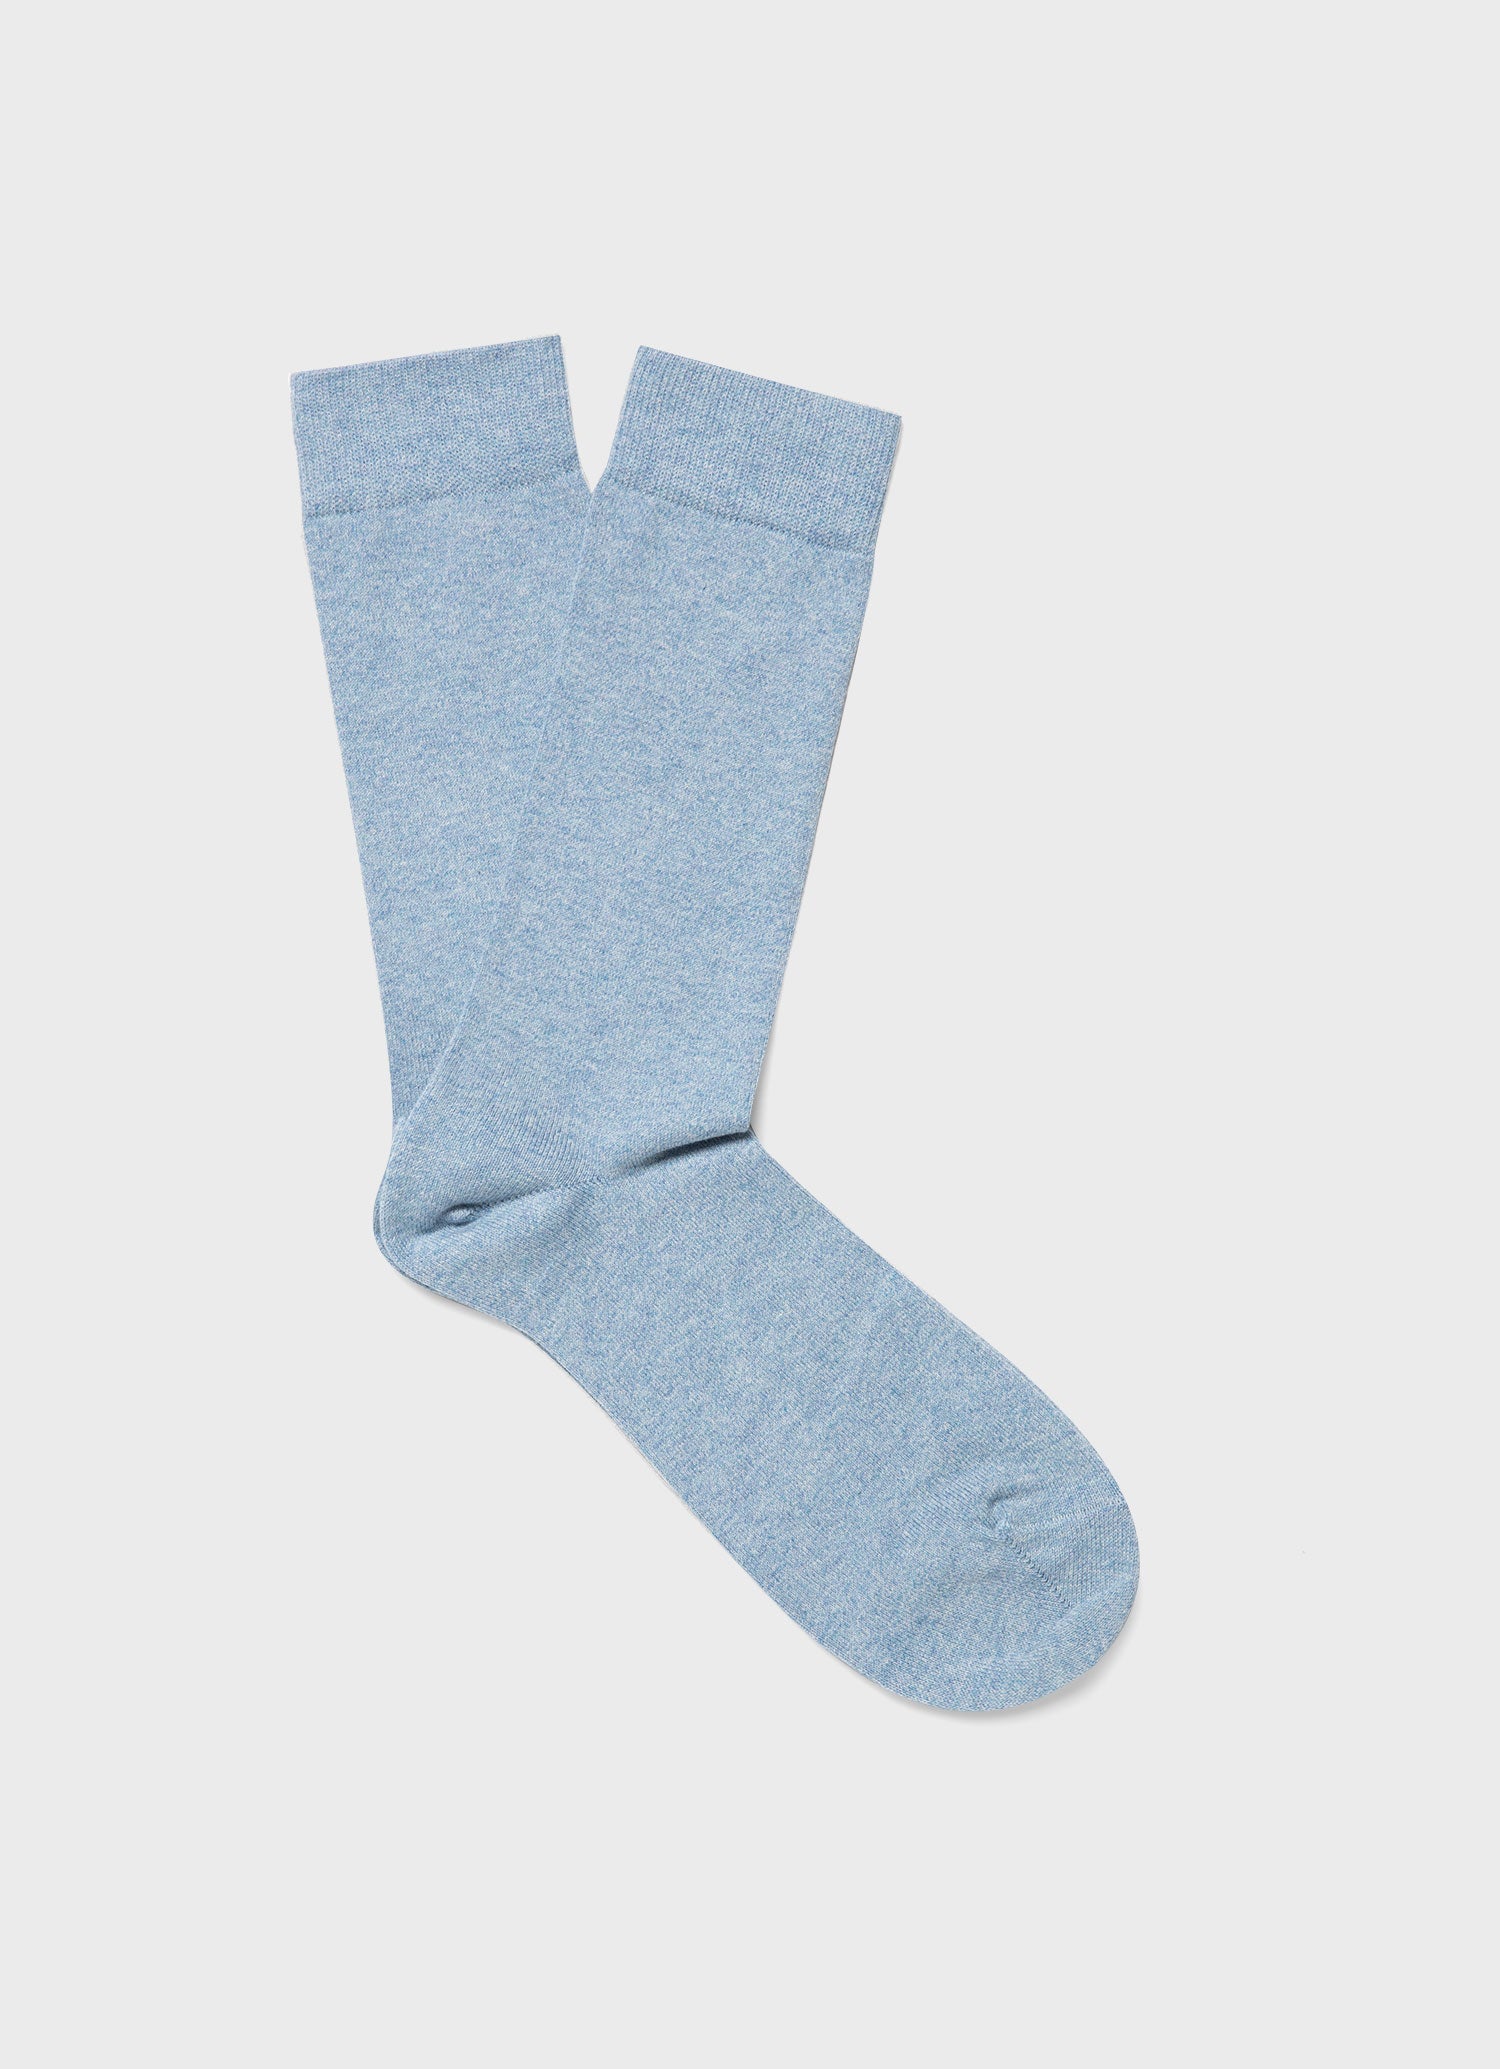 Men's Cotton Socks in Light Blue